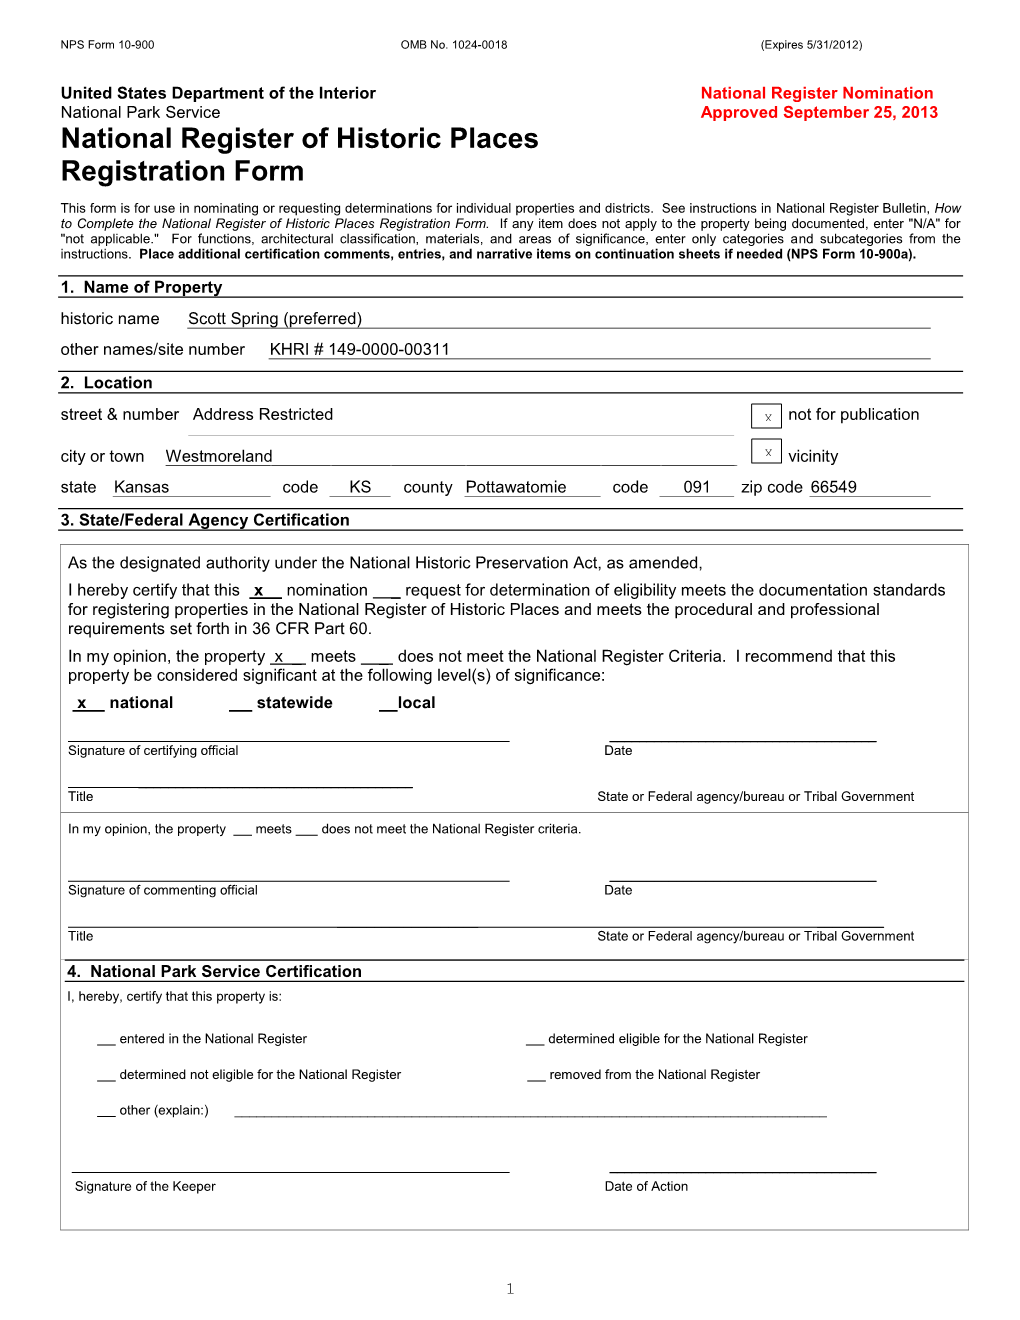 National Register Nomination National Park Service Approved September 25, 2013 National Register of Historic Places Registration Form